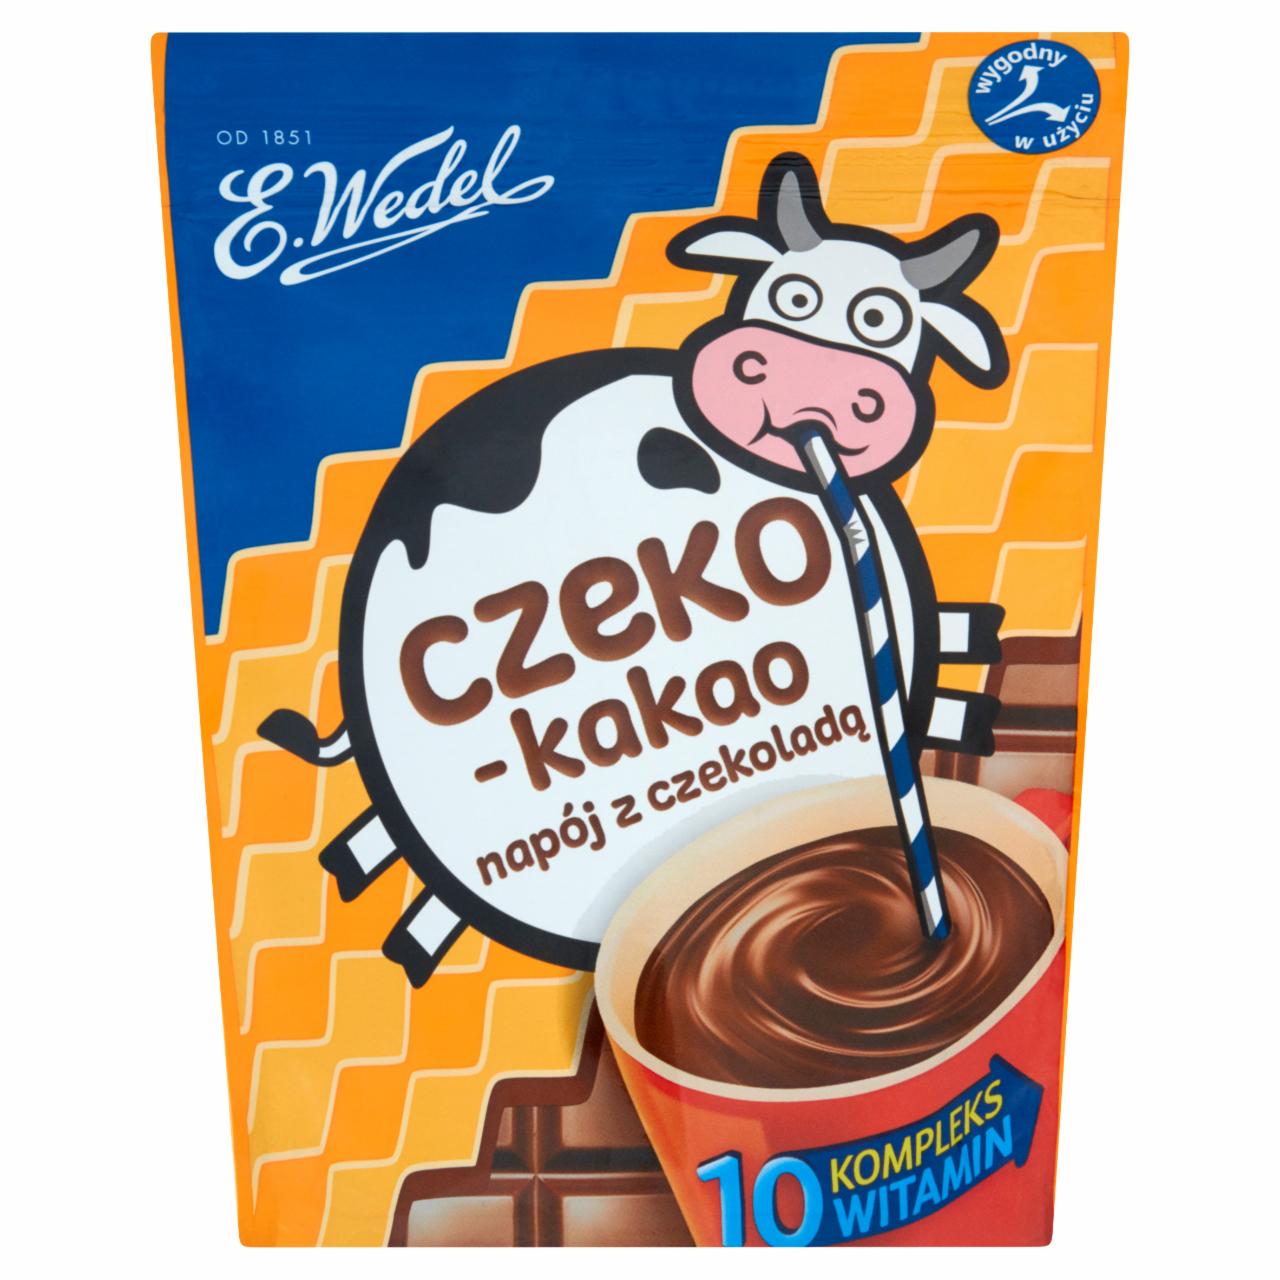 Zdjęcia - E. Wedel Czeko-kakao Napój z czekoladą 200 g